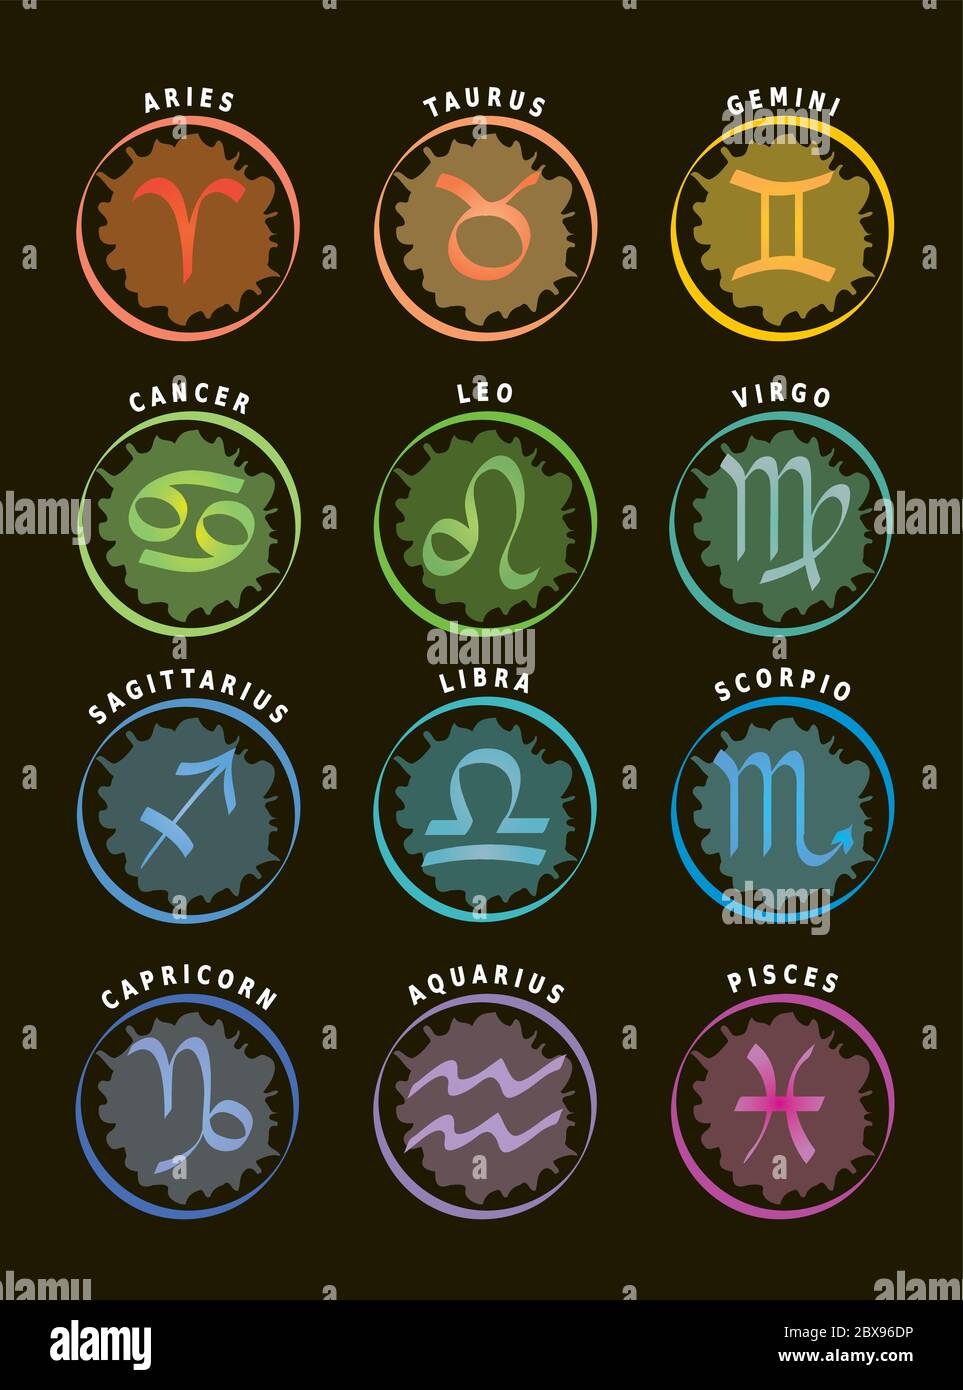 Segni zodiacali, dodici icone astrologiche con nomi in inglese, sfondo nero Illustrazione Vettoriale